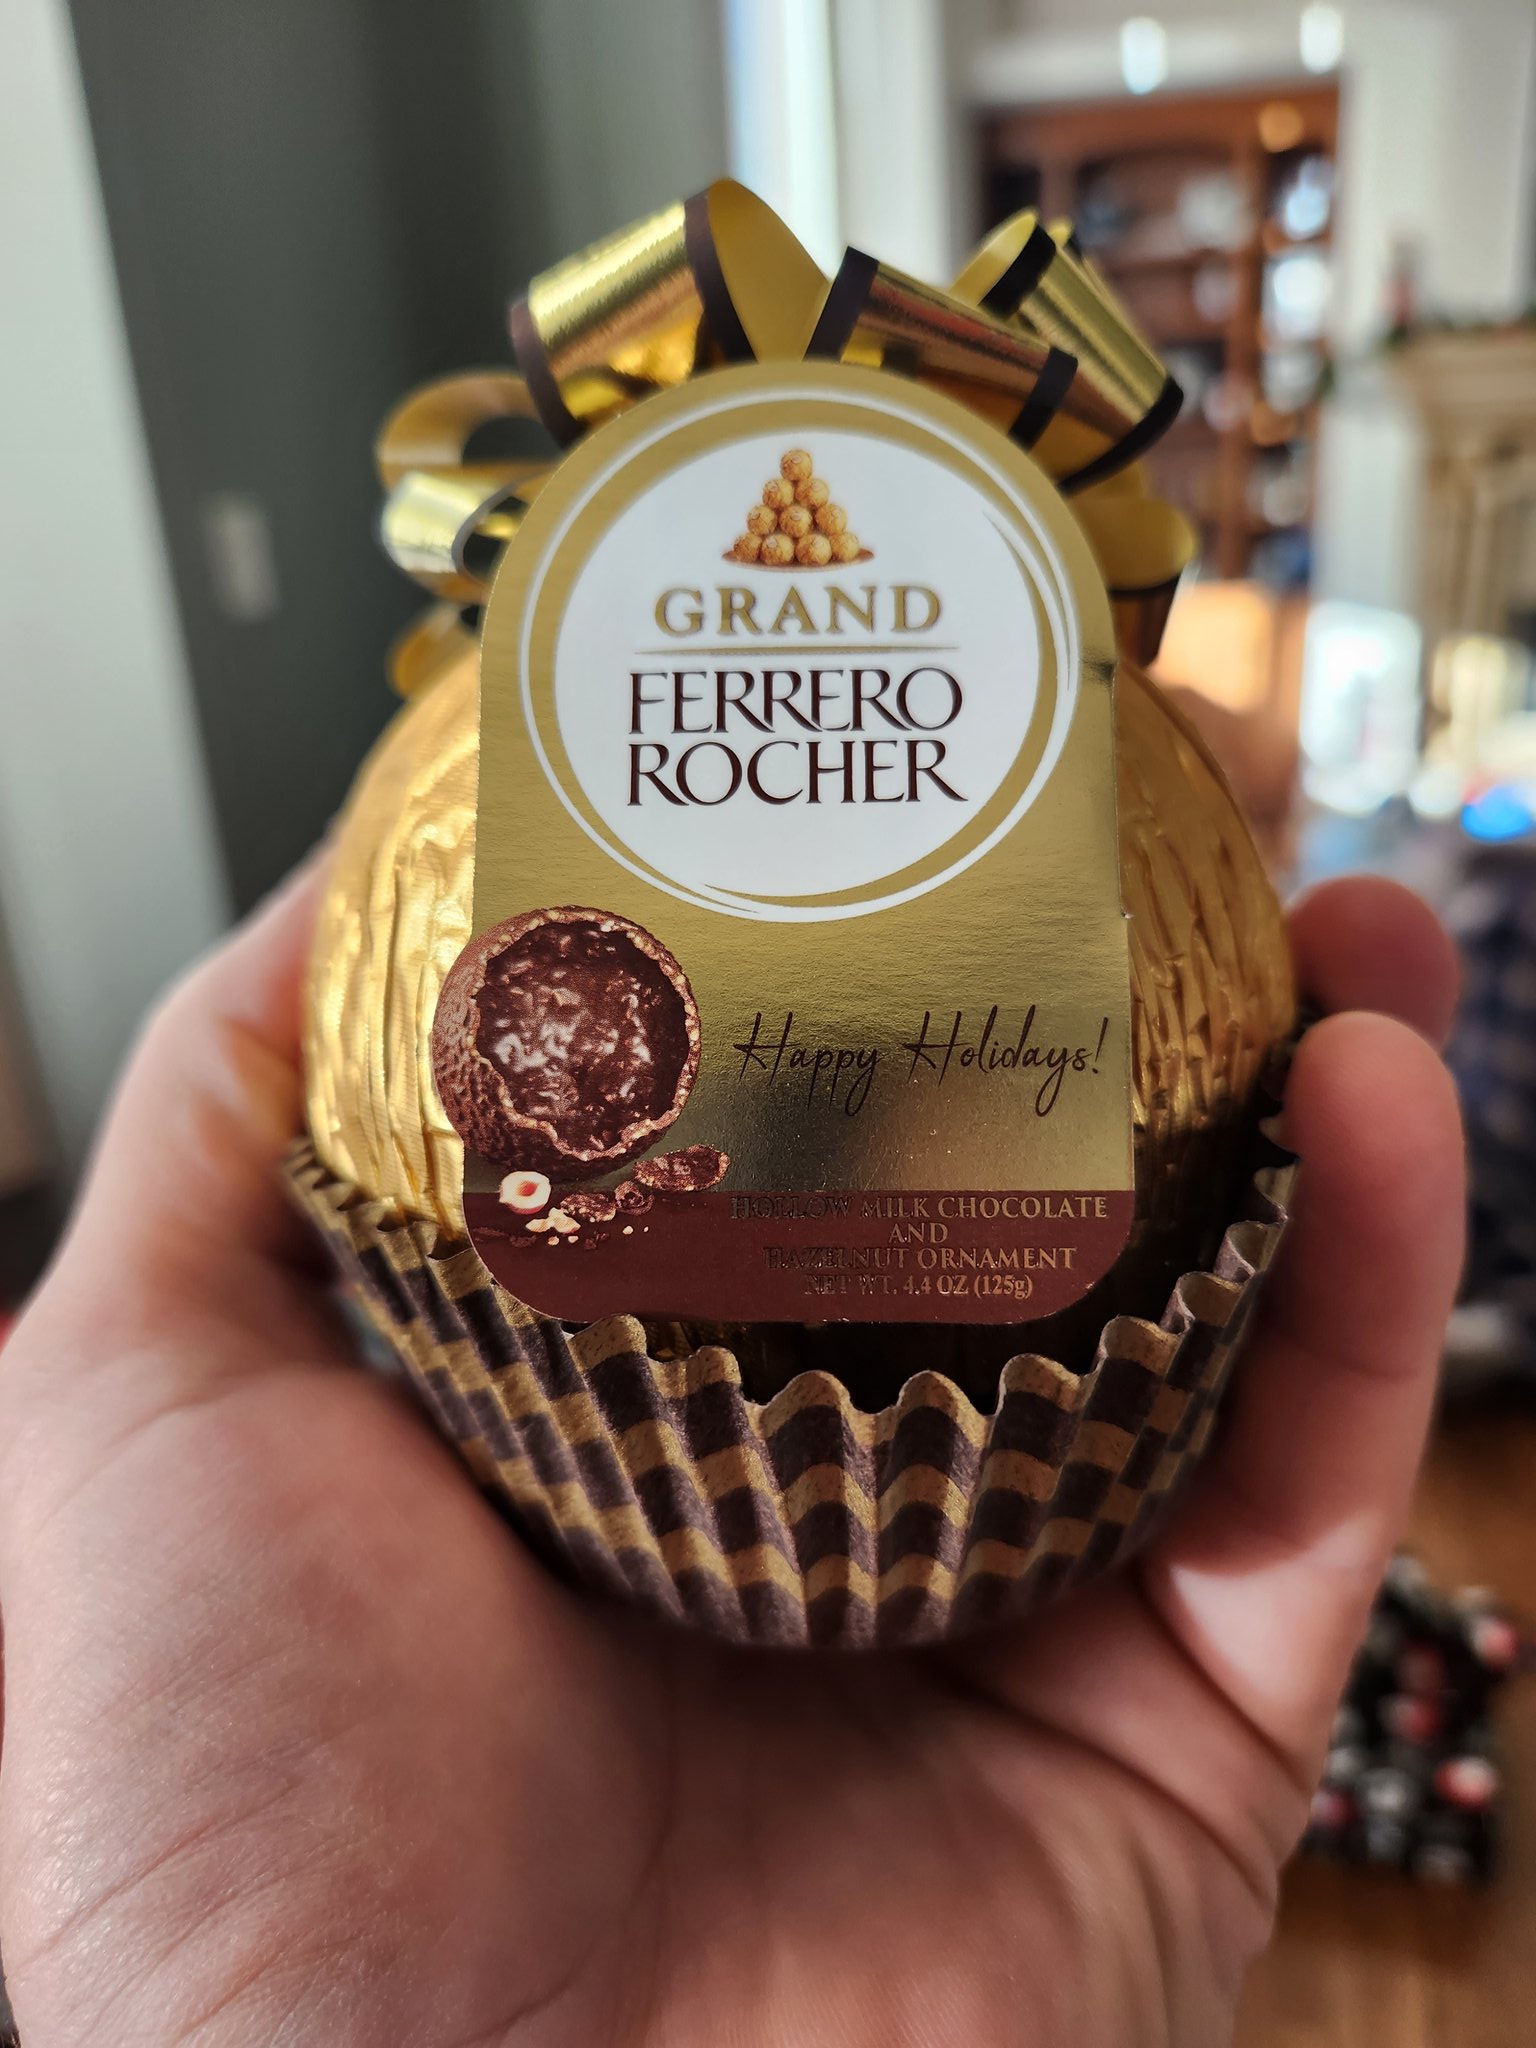 Ferrero Grand Rocher 4.4oz